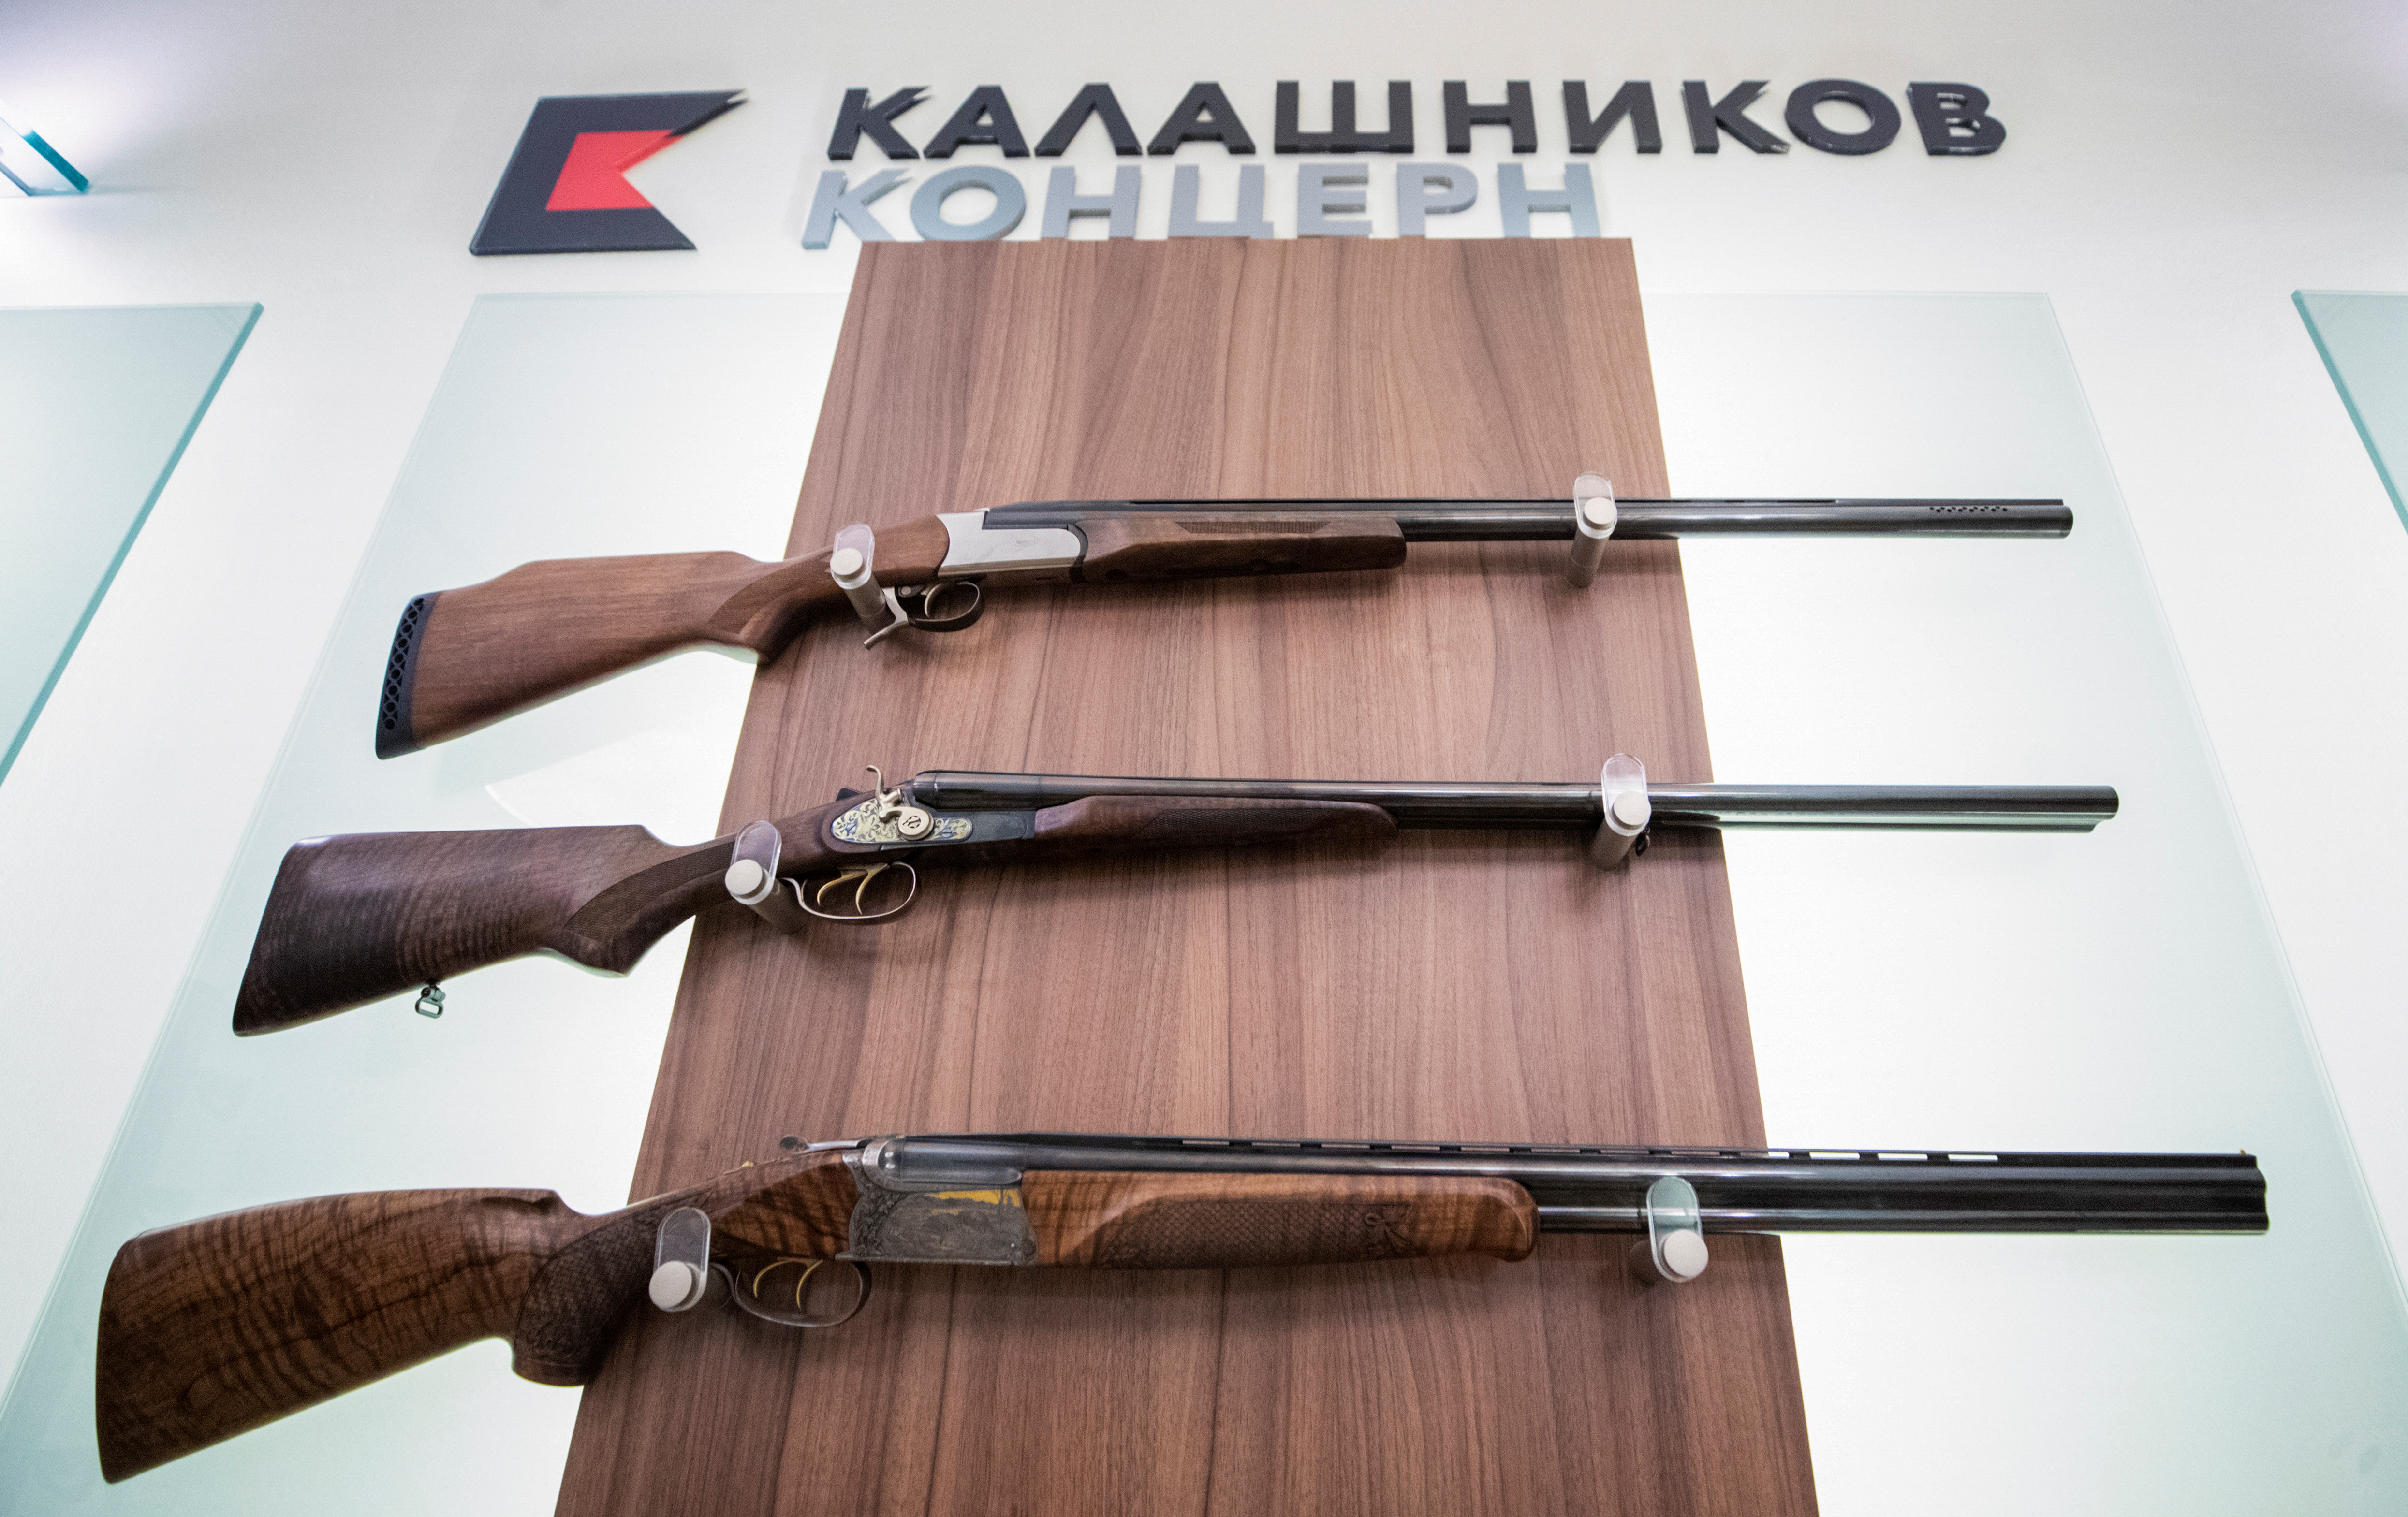 Las armas se exhiben en una oficina del fabricante de armas ruso Kalashnikov. REUTERS/Maxim Shemetov